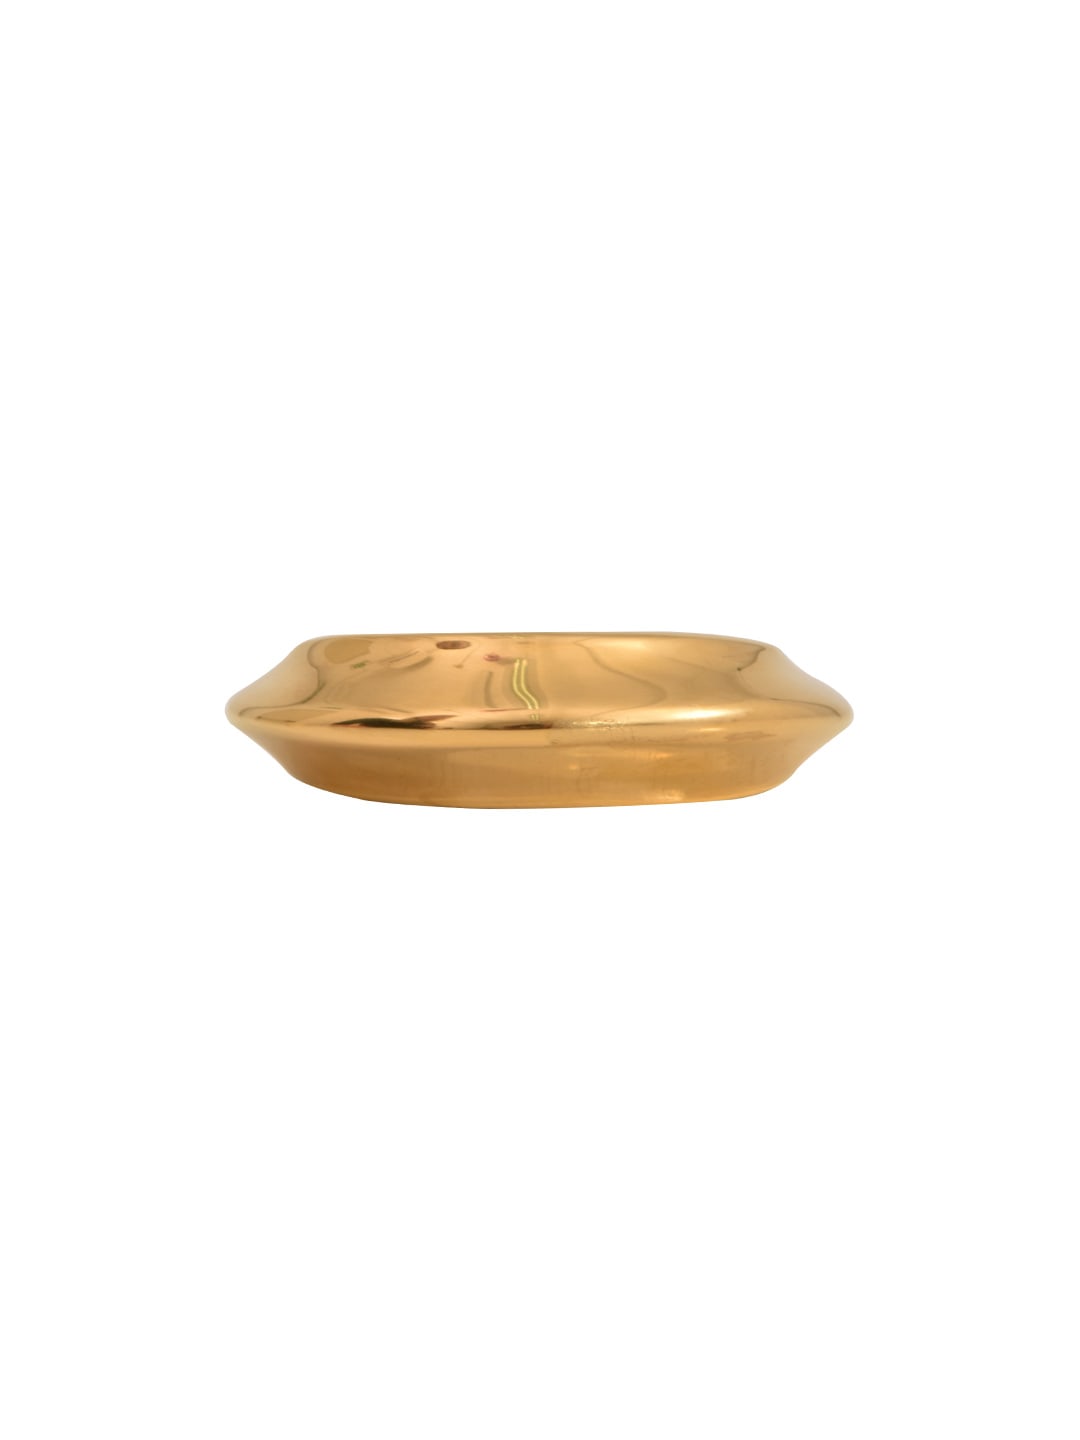 CELINE GOLD METAL BRACELET,46L6161SIV35RR